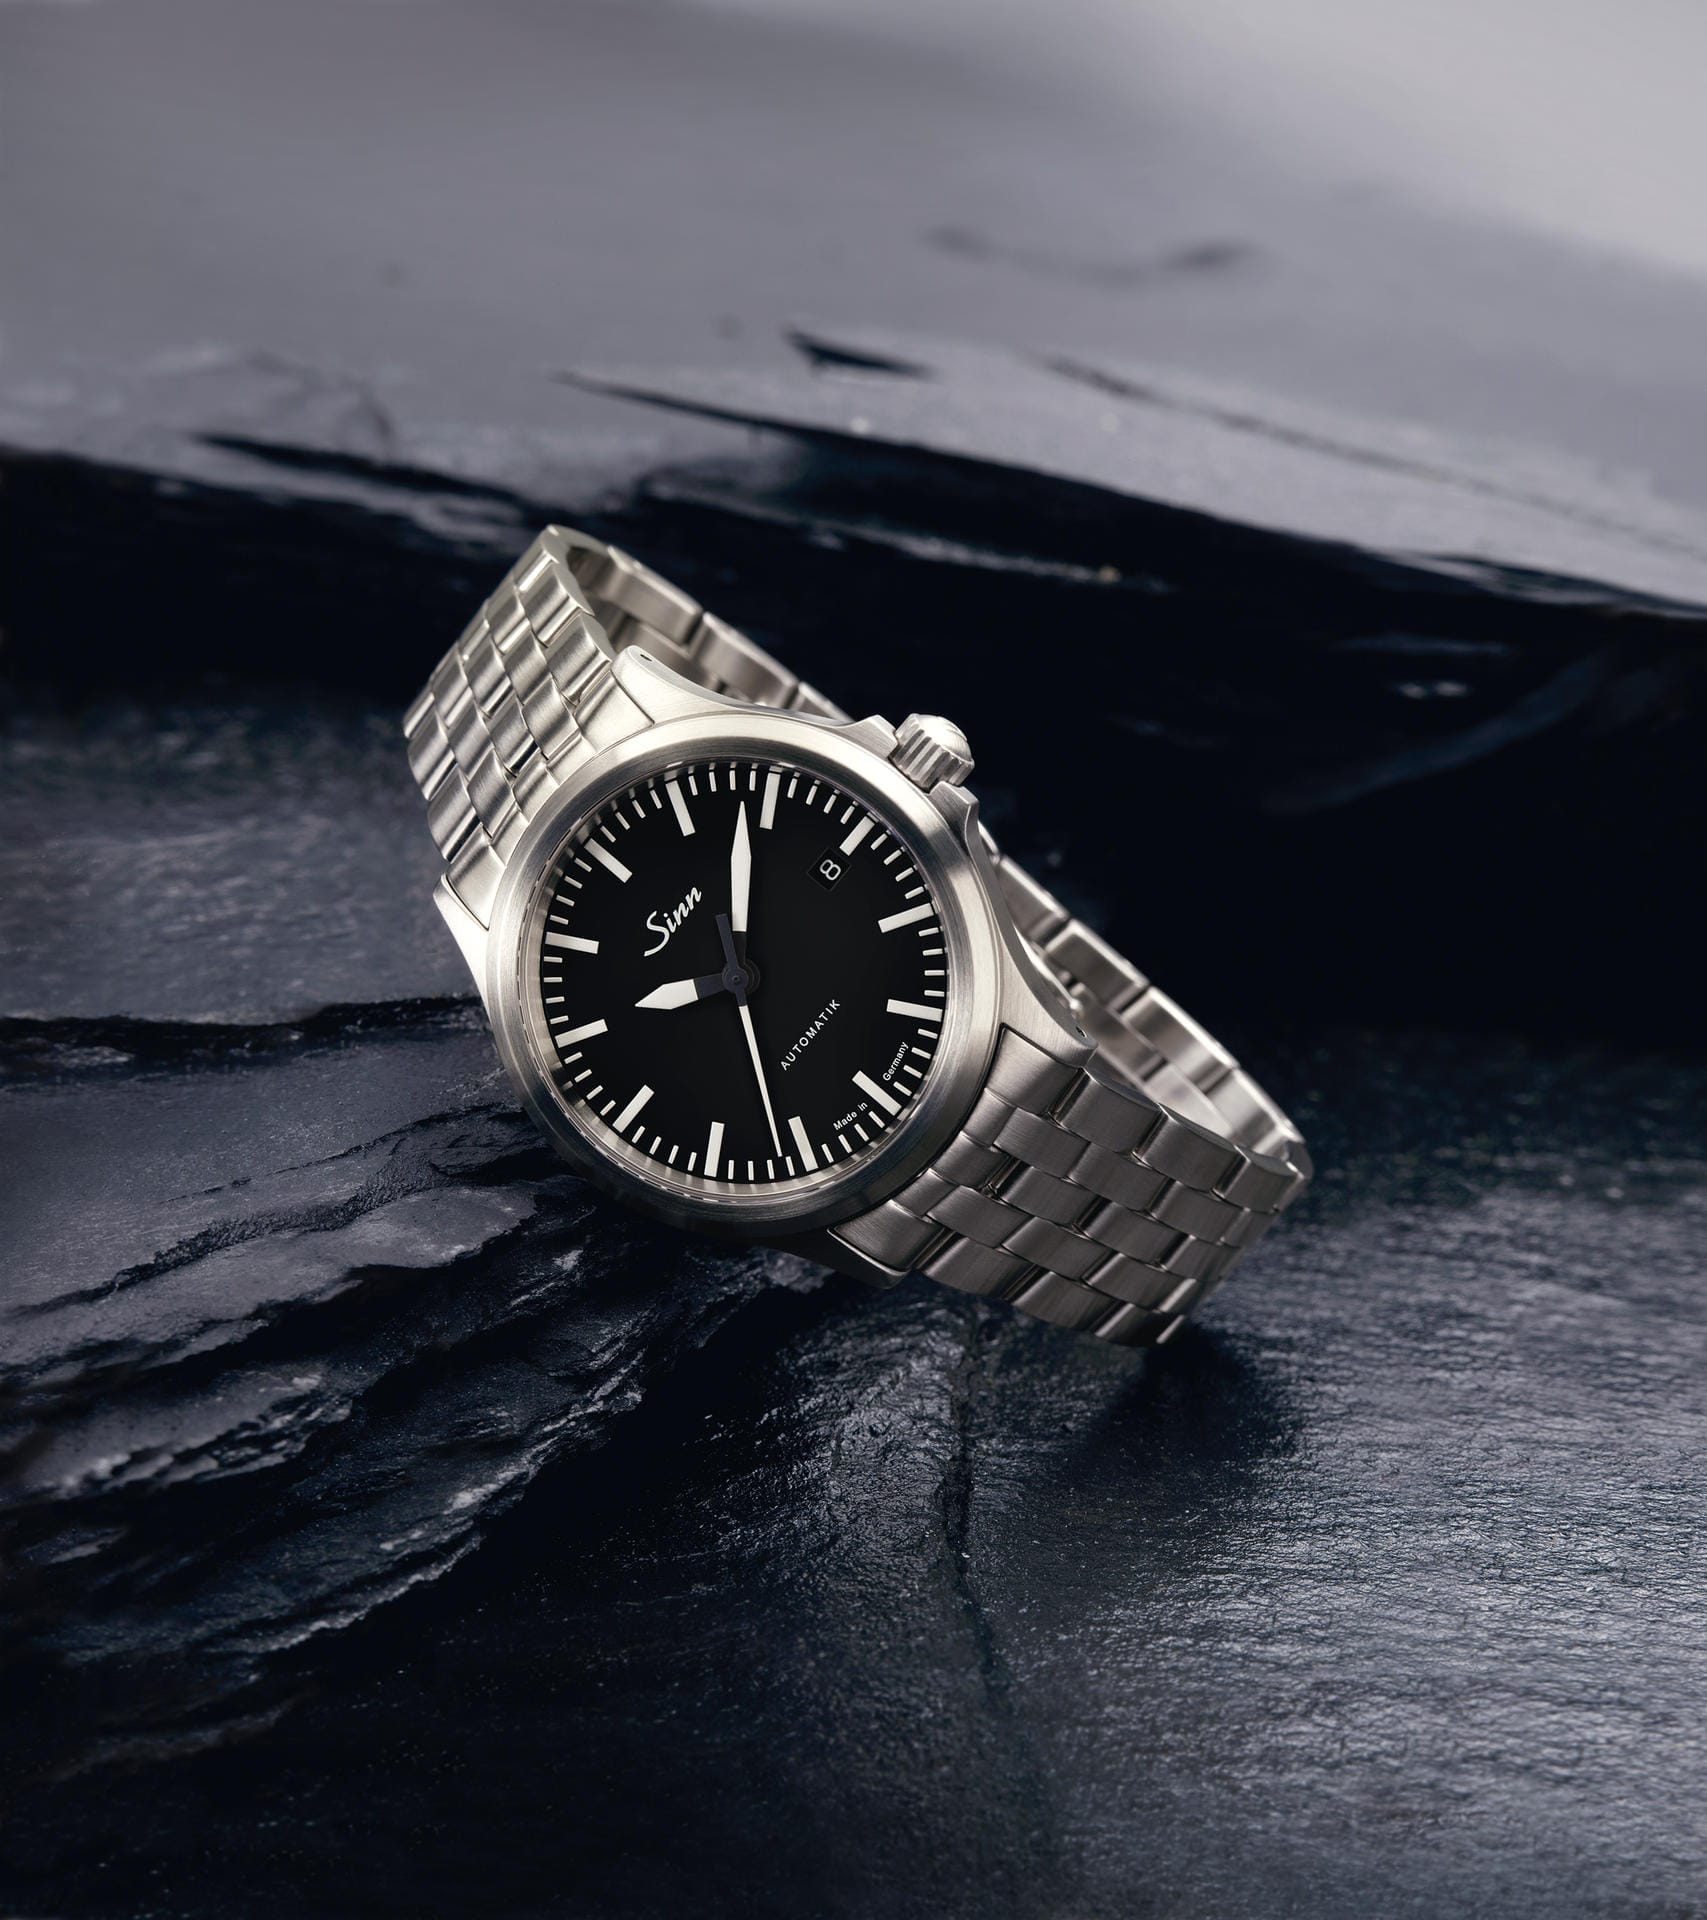 Vom Frankfurter Uhrenhersteller Sinn gibt es eine Vielzahl schicker, aber zugleich auch günstiger Uhren. Ein Beispiel ist das Modell 556 I mit Lederarmband für 850 Euro und mit Massivarmband (im Bild) für 995 Euro.